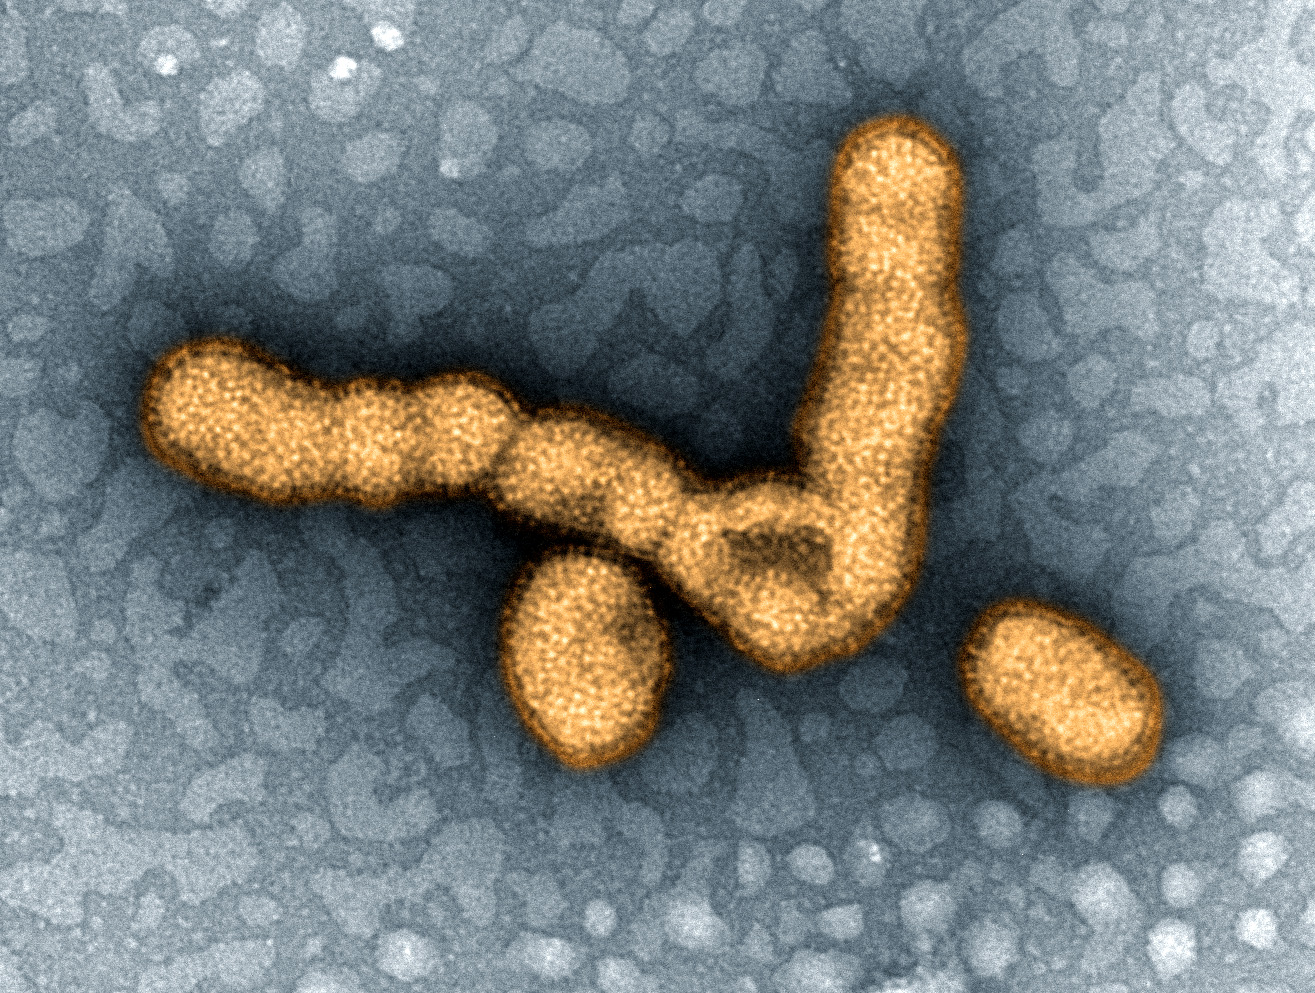 H1 N1 virus